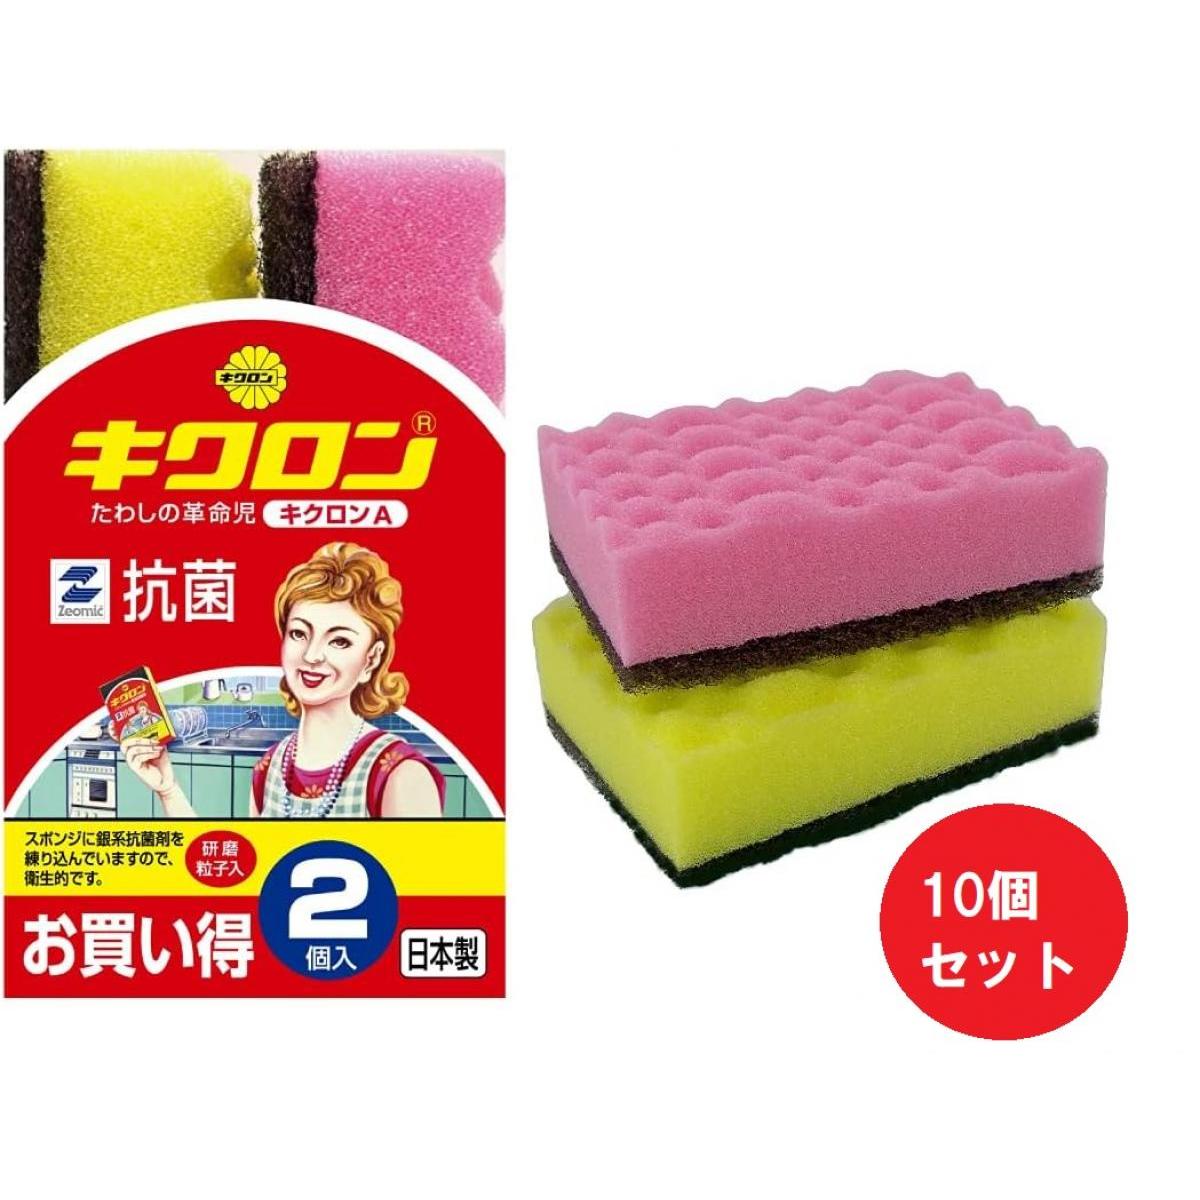 【まとめ買い】【10個セット】キクロン キクロンA 抗菌 キッチンスポンジ ピンク・イエロー 2個入 研磨粒子入り 日本製 スポンジ 食器洗い 食洗